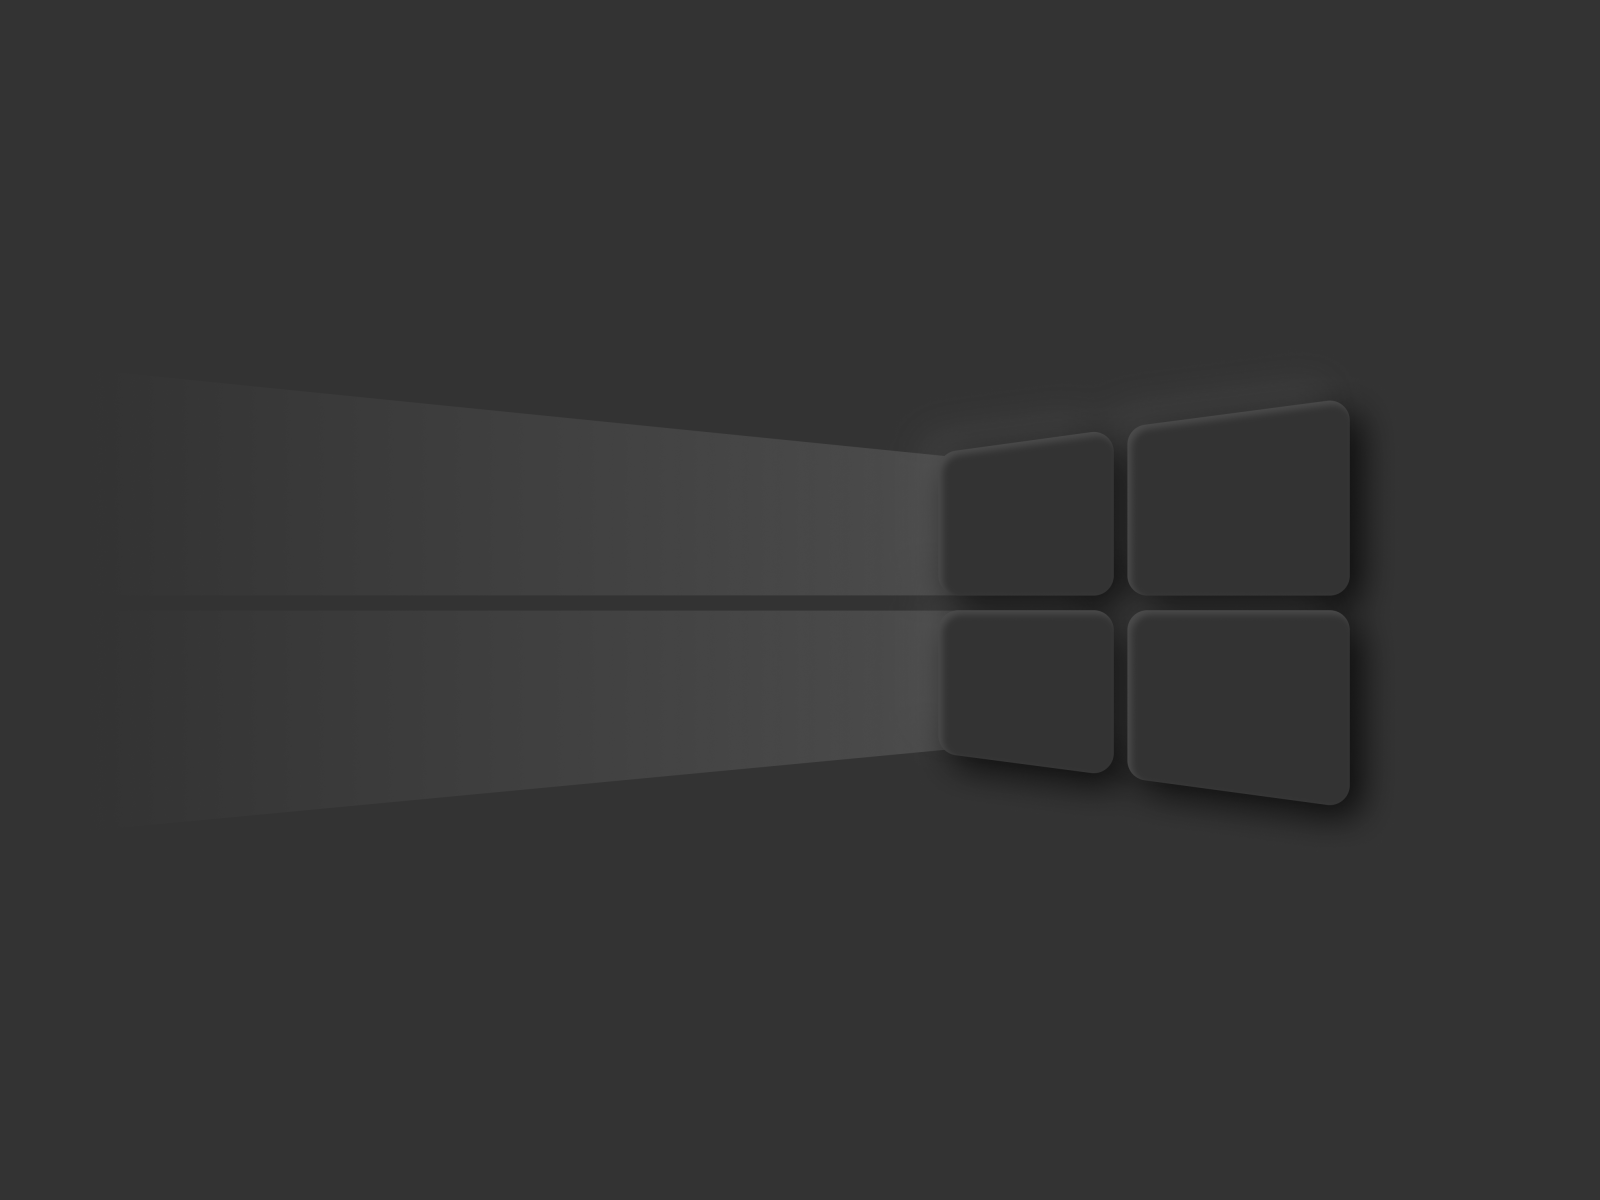 2560x1700 Resolution Windows 10 Dark Mode Logo Chromebook Pixel Wallpaper -  Wallpapers Den